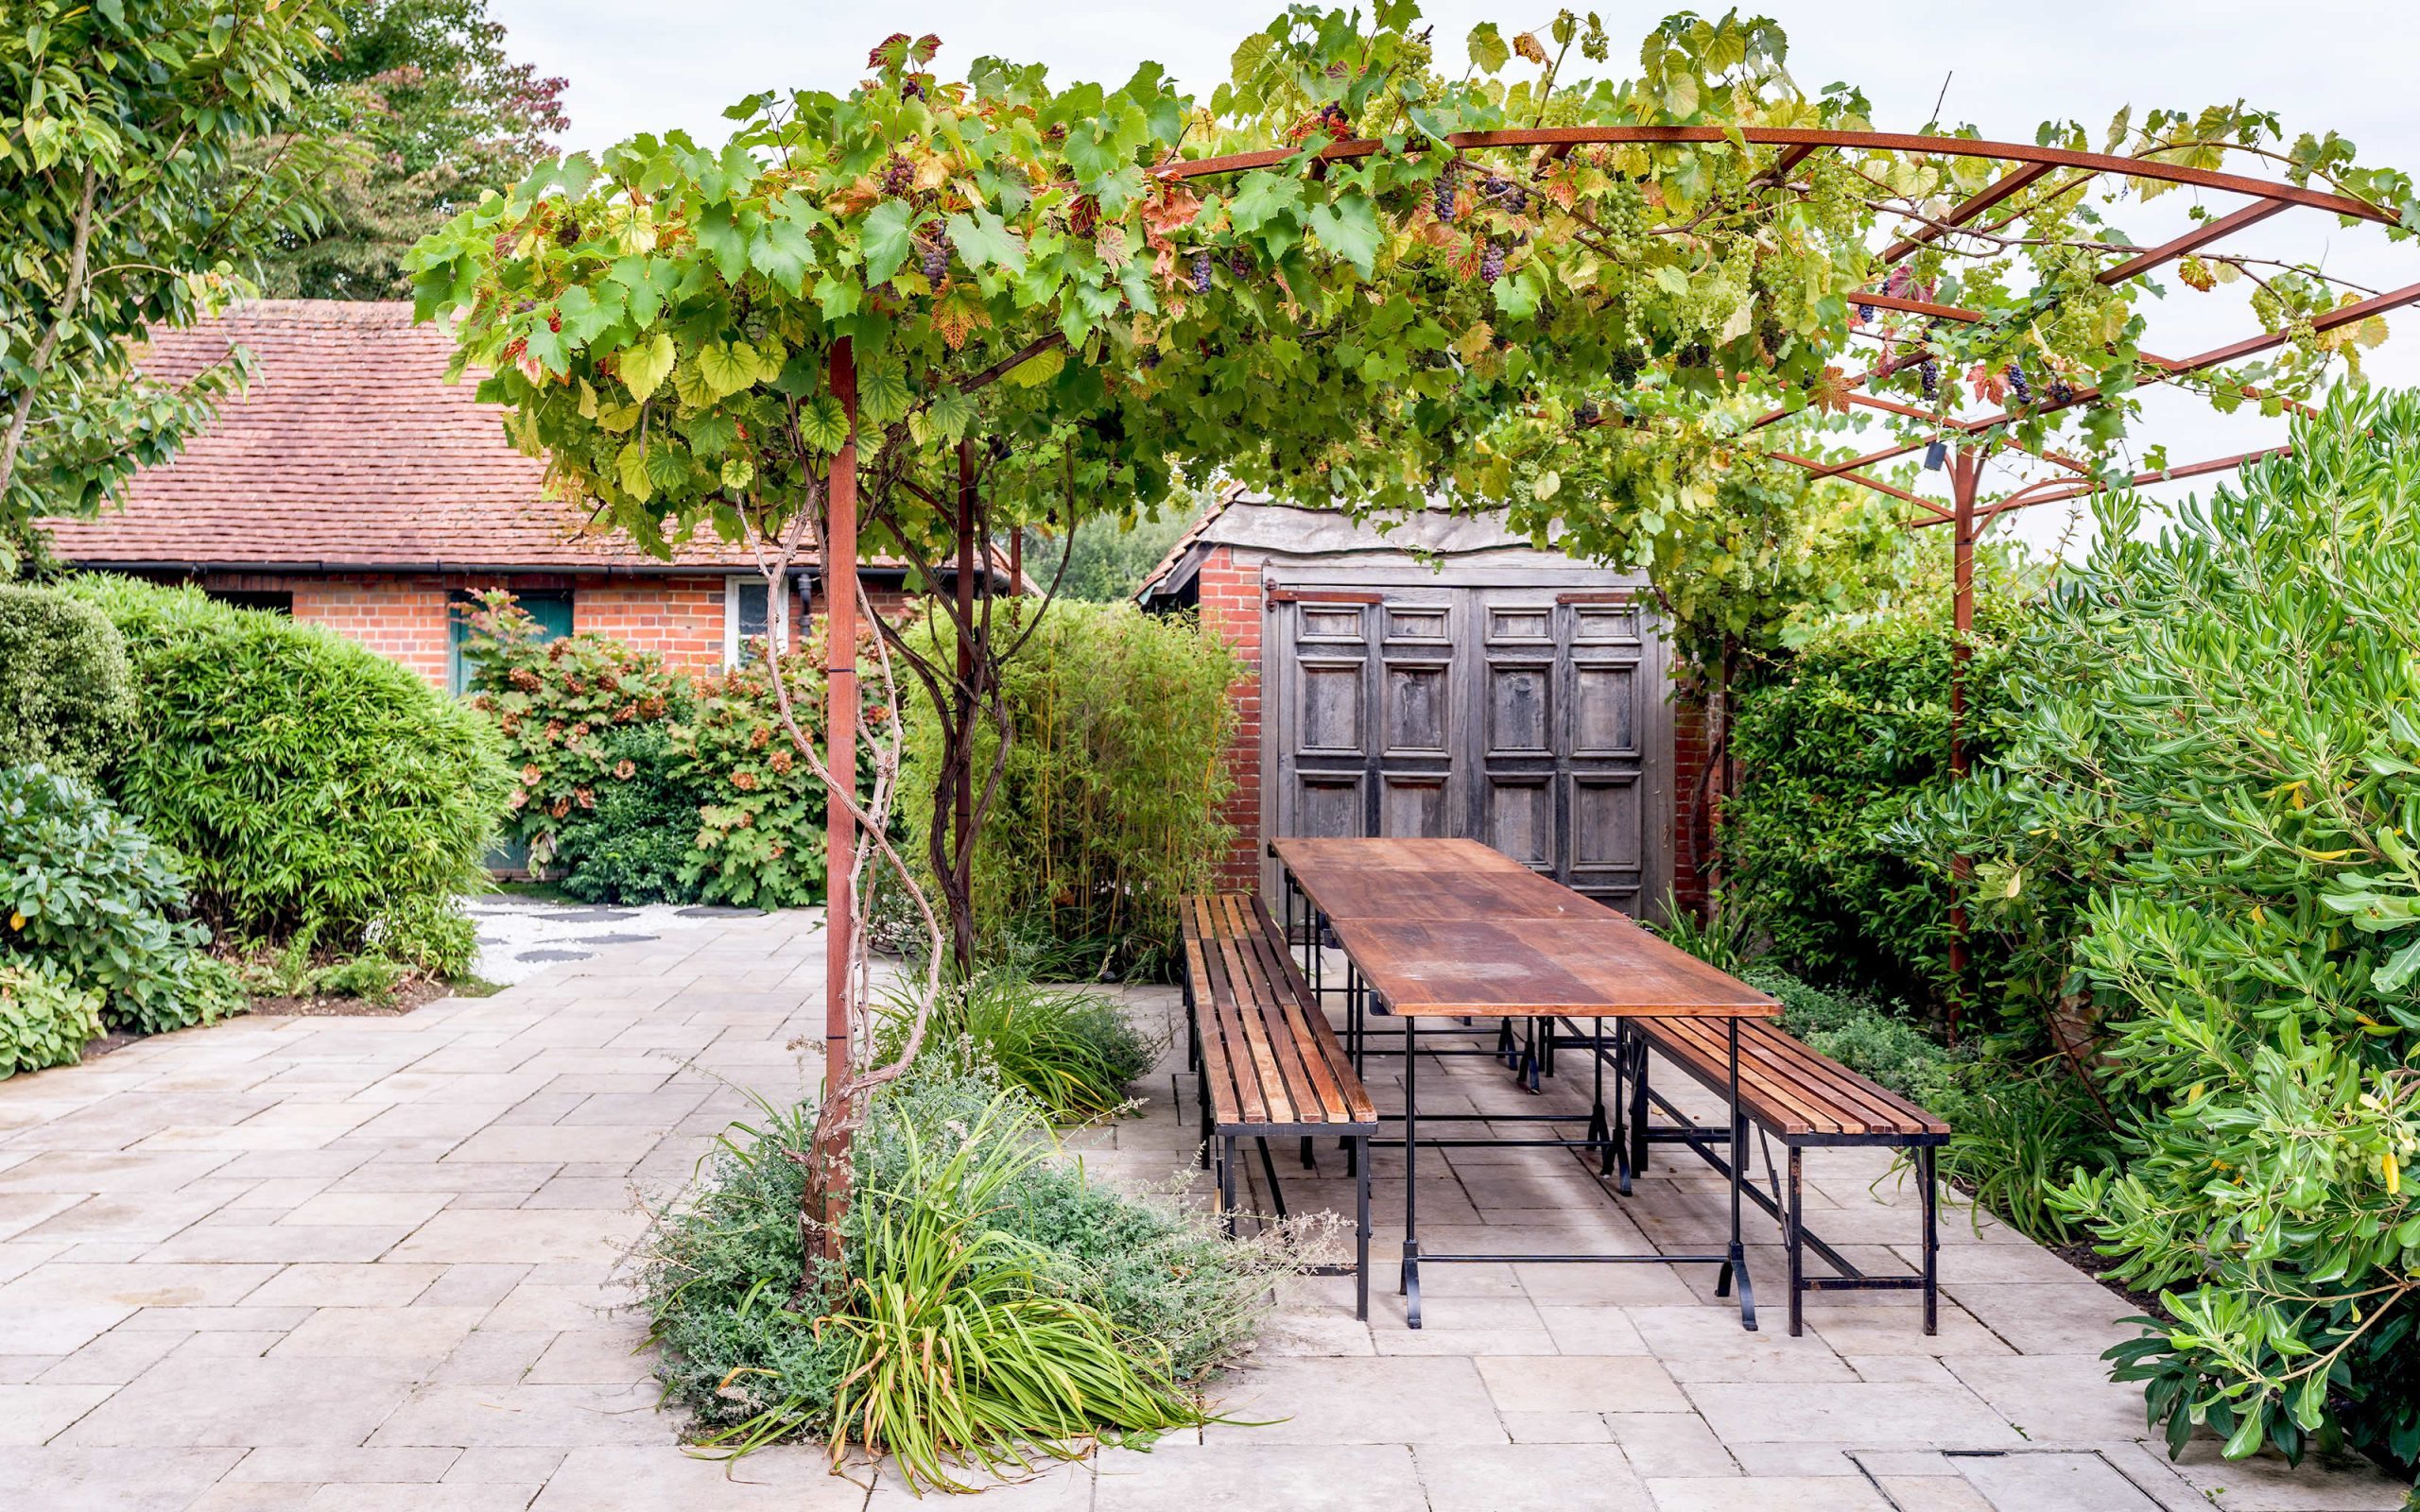 Surrey Woking country garden design pergola social eating space